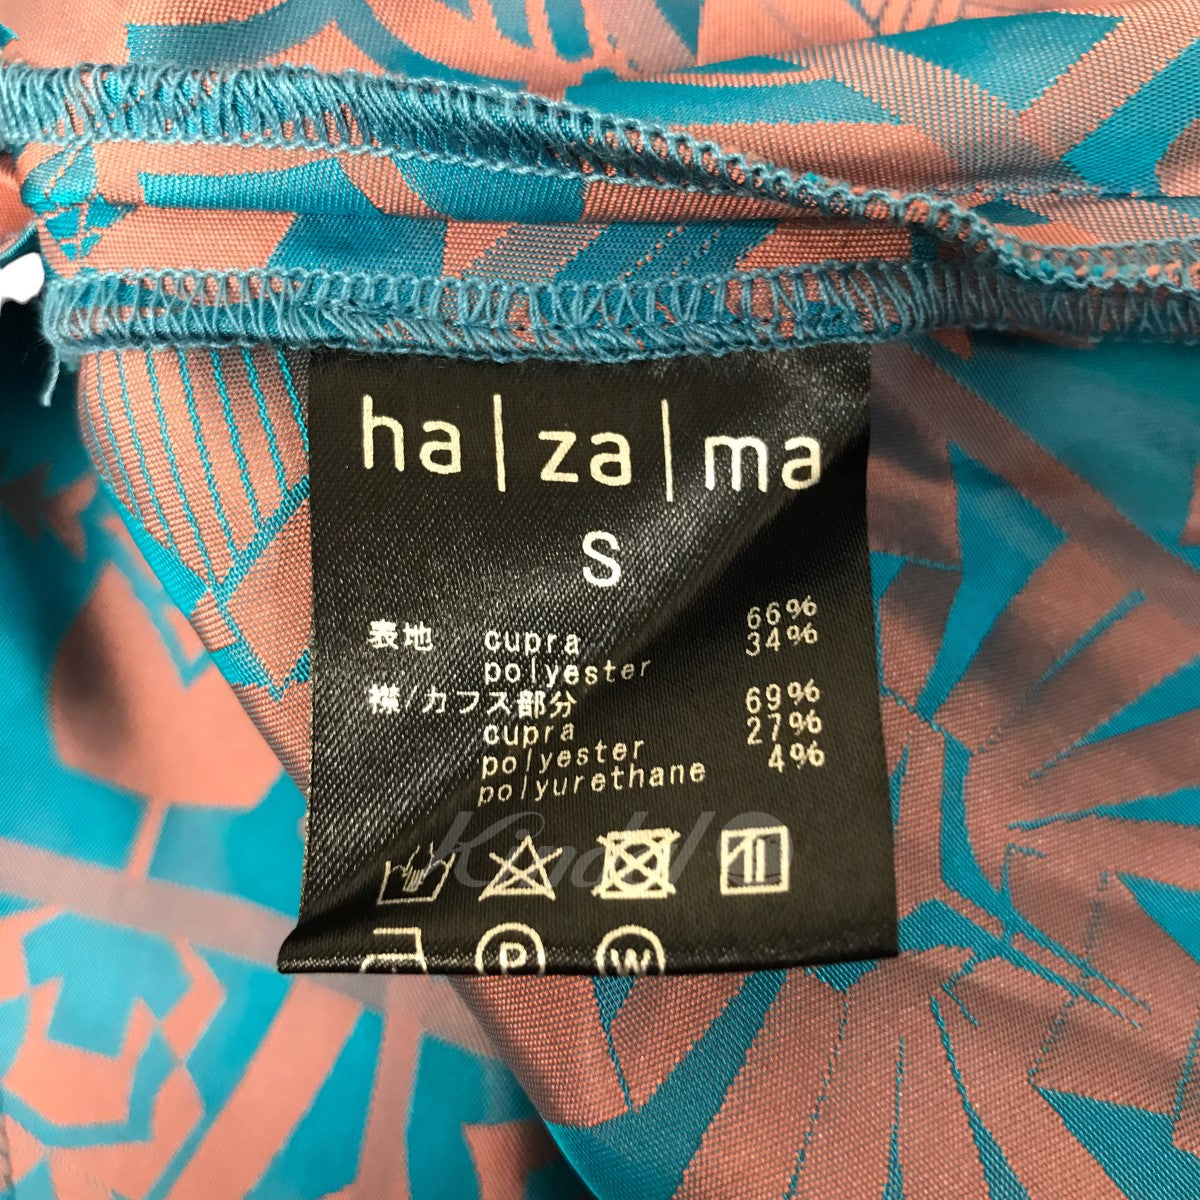 正規品が格安通販 hazama 虚空を紡ぎ、織り成す物語のワンピース | www ...